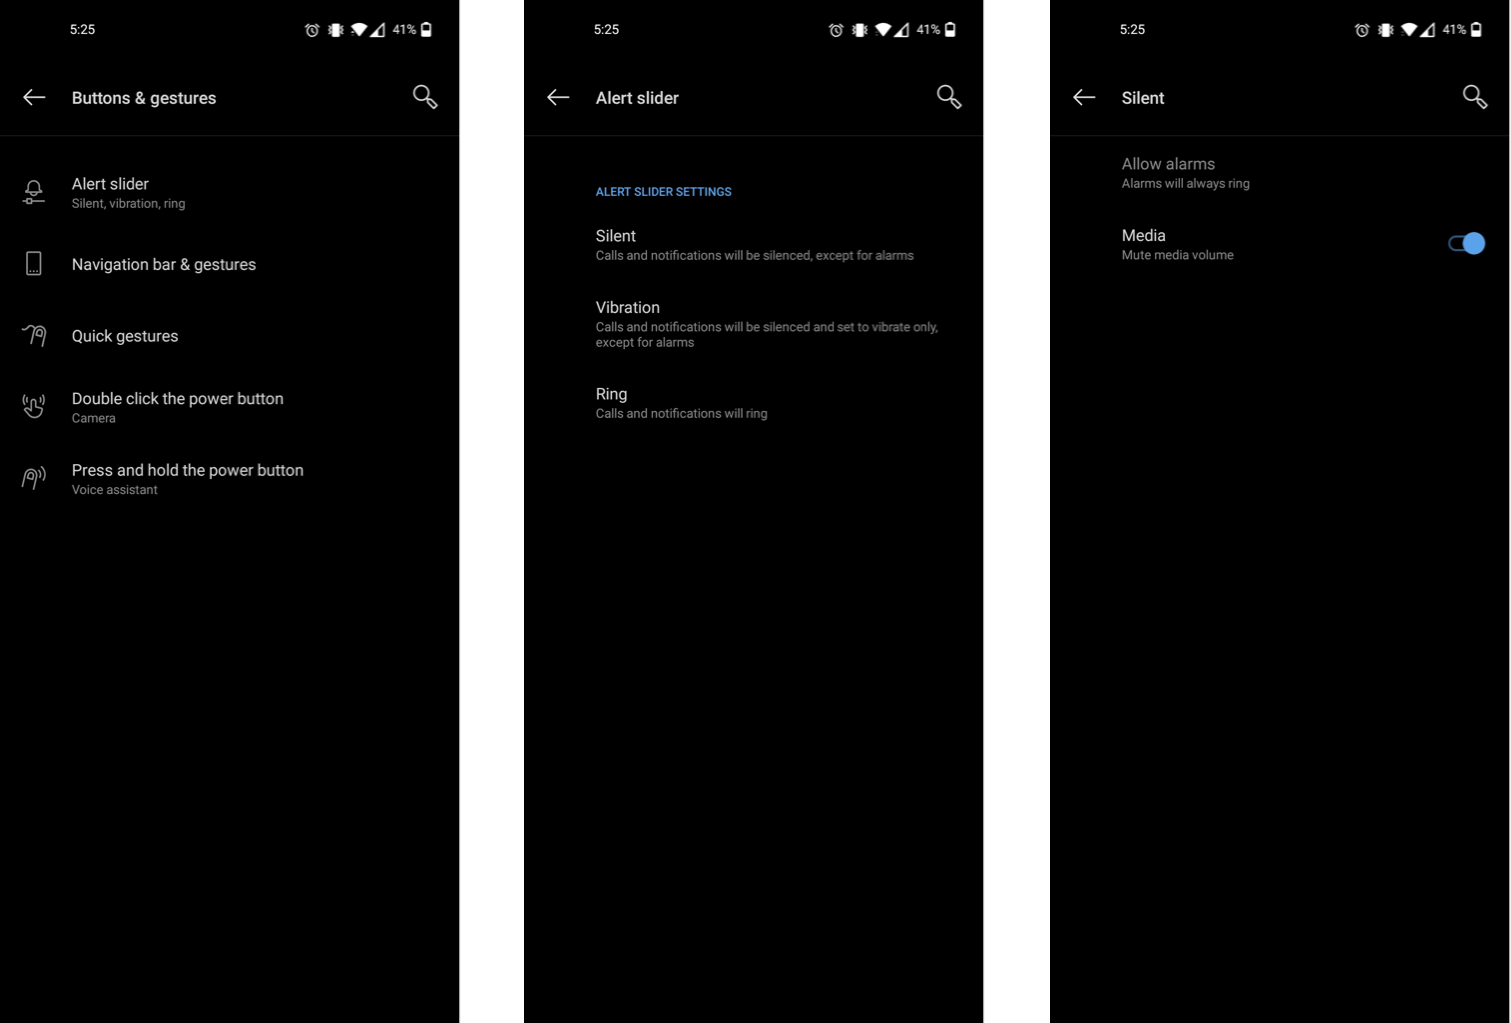 Alert slider settings on the OnePlus 8